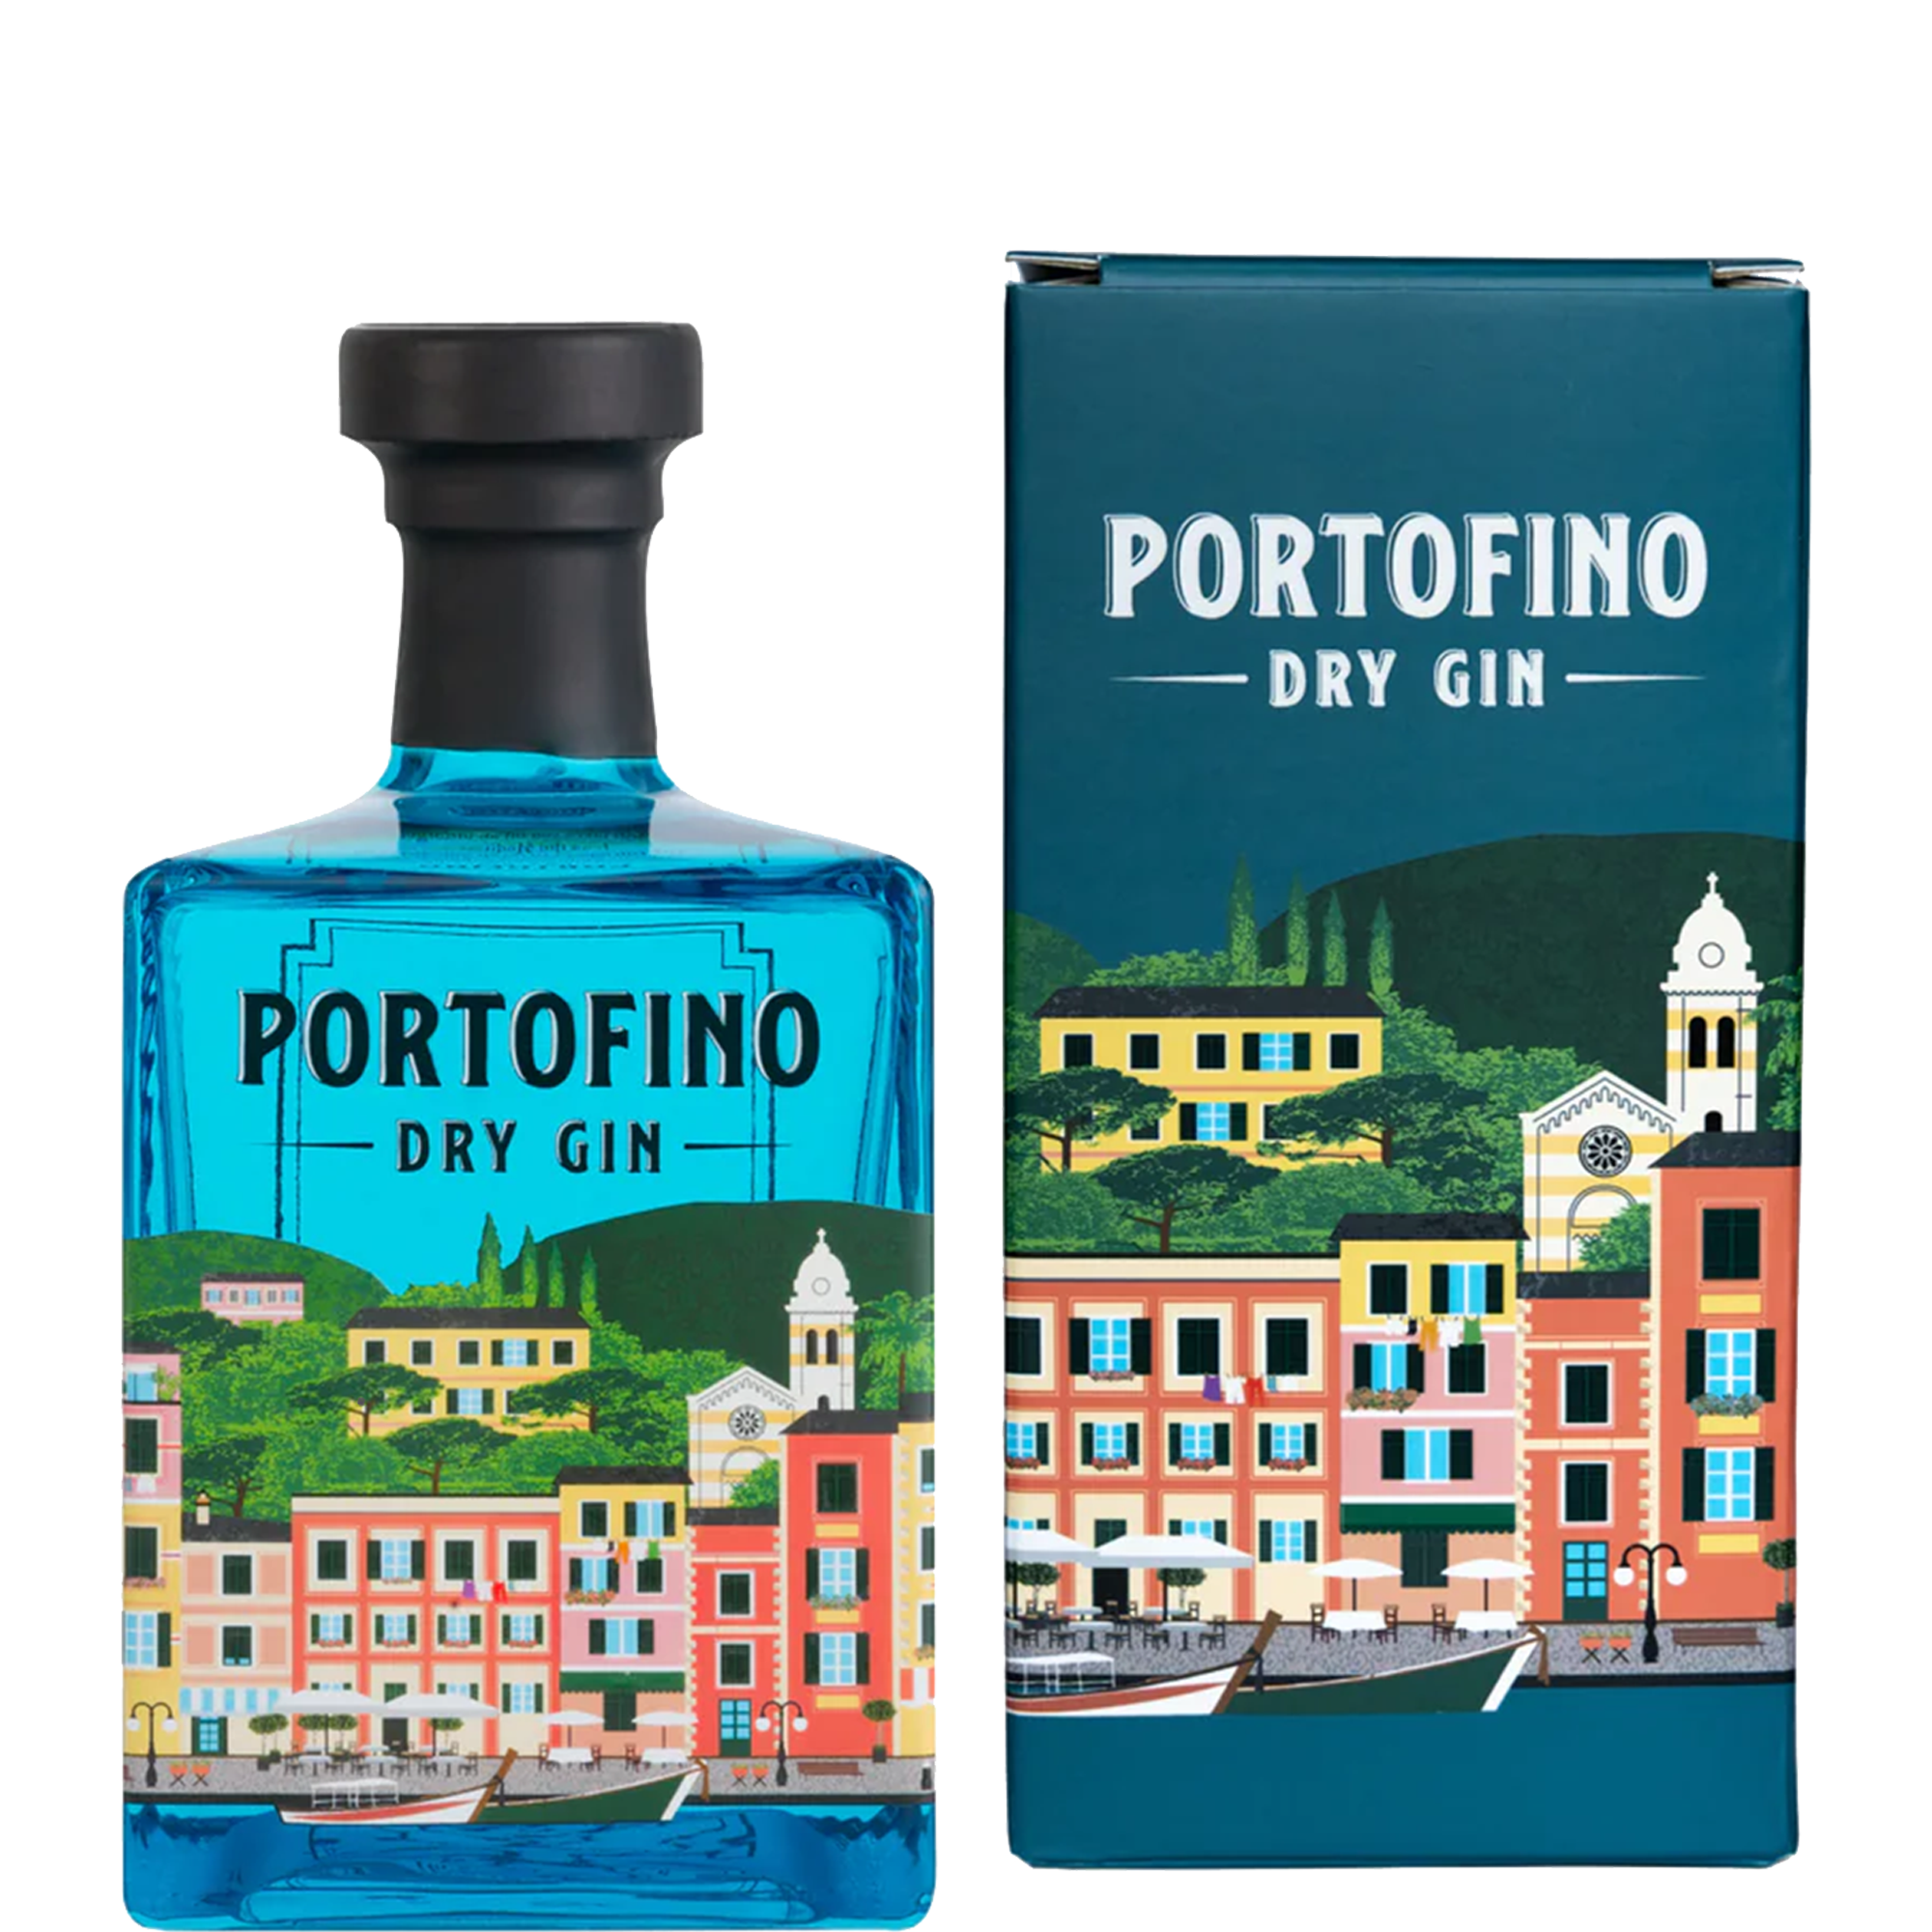 Włoski gin Portofino Dry Gin 500 ml wraz z pudełkiem prezentowym